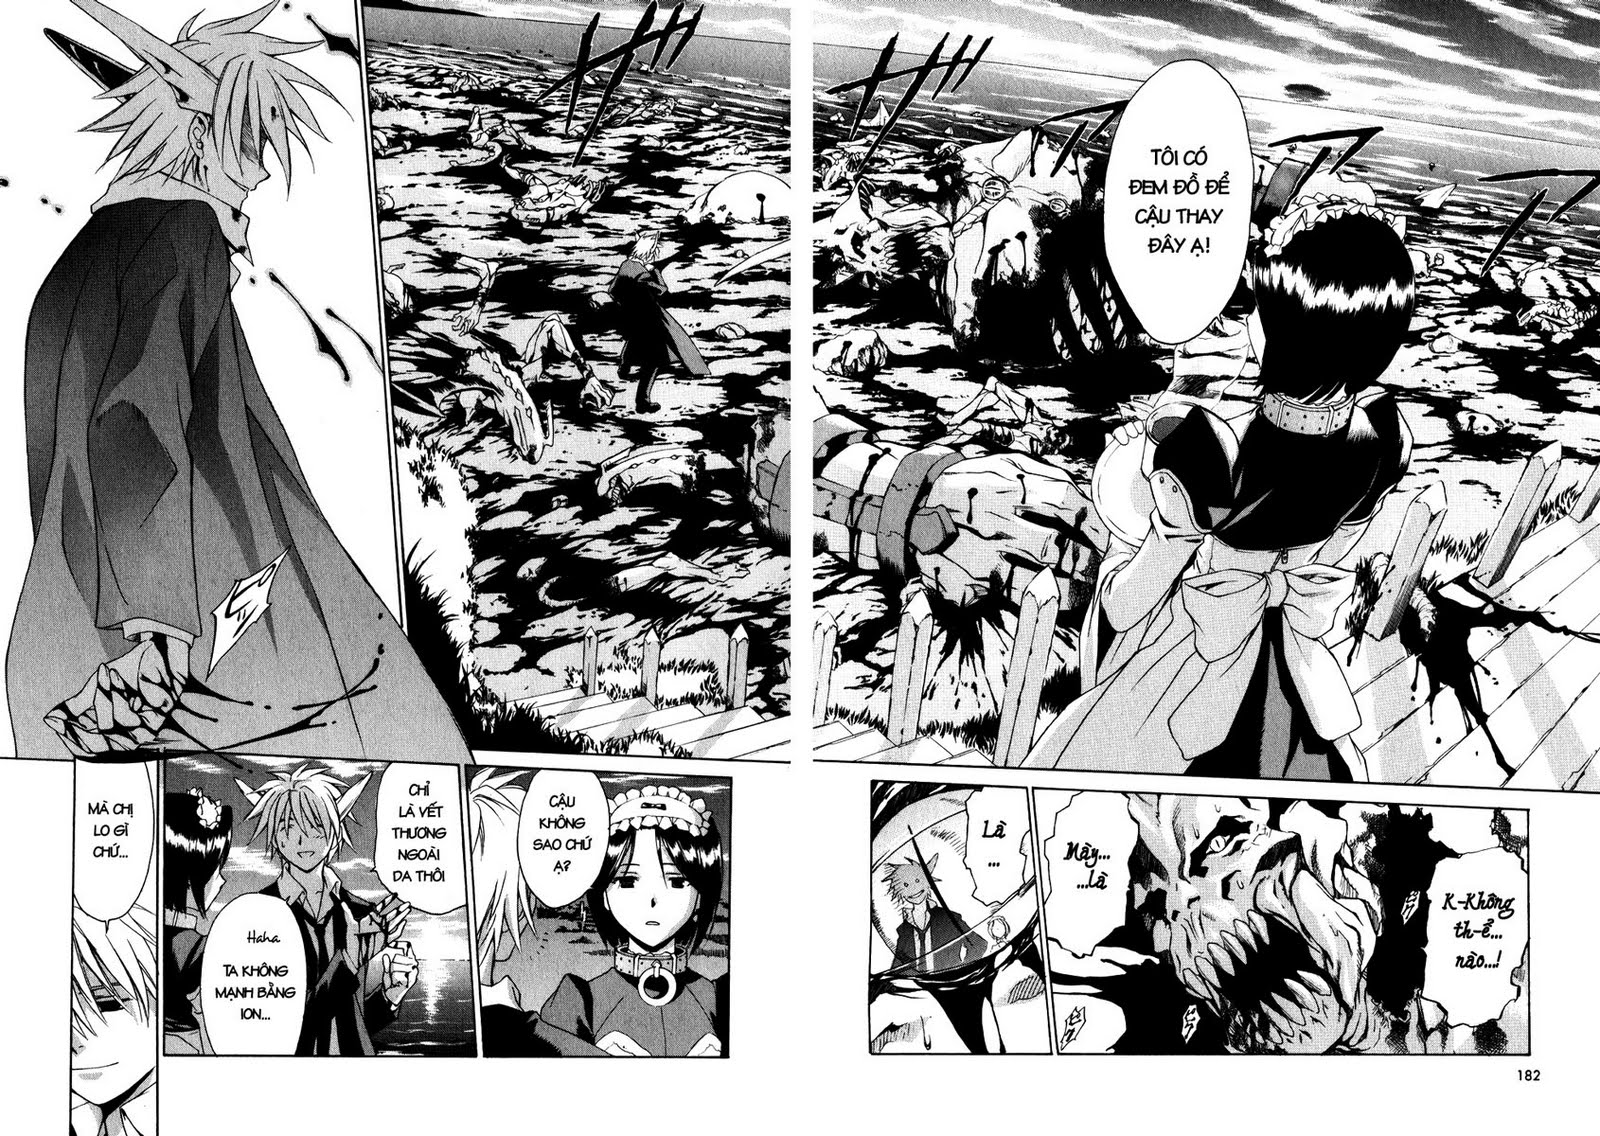 [Manga] Chrono Crusade (Đọc online tại SSF) Chap%252014-11